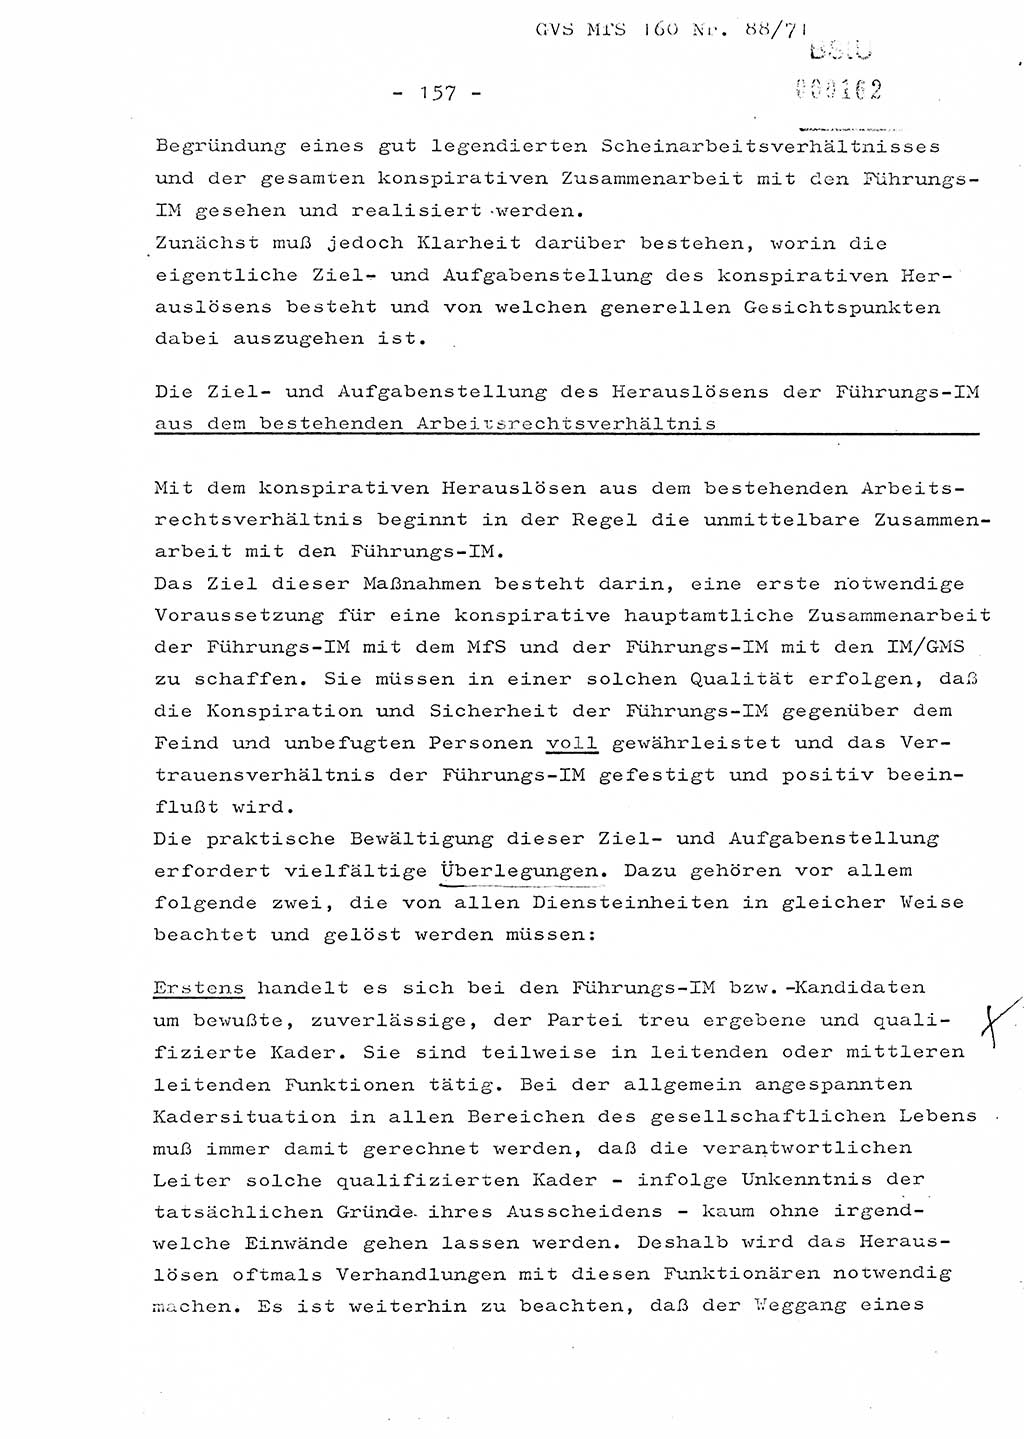 Dissertation Oberstleutnant Josef Schwarz (BV Schwerin), Major Fritz Amm (JHS), Hauptmann Peter Gräßler (JHS), Ministerium für Staatssicherheit (MfS) [Deutsche Demokratische Republik (DDR)], Juristische Hochschule (JHS), Geheime Verschlußsache (GVS) 160-88/71, Potsdam 1972, Seite 157 (Diss. MfS DDR JHS GVS 160-88/71 1972, S. 157)